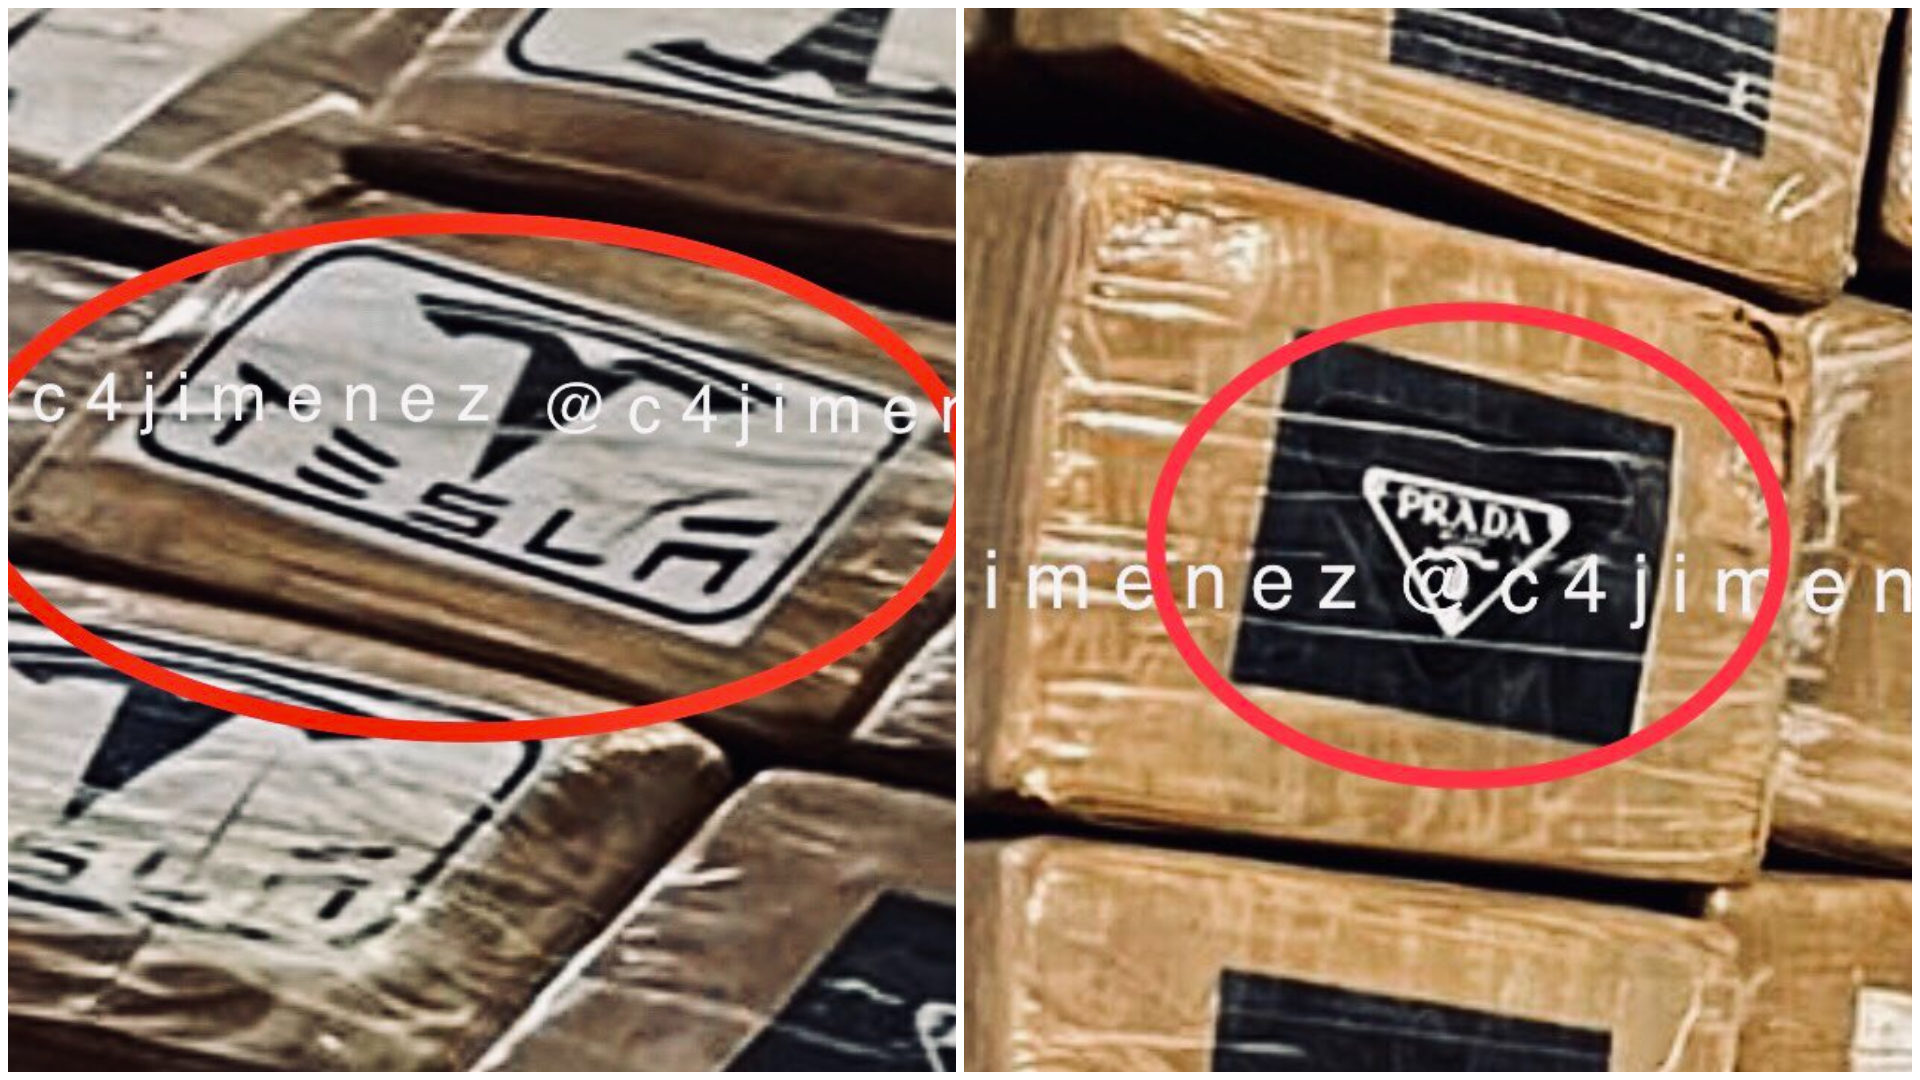 El decomiso de cocaína en la Ciudad de México contenía paquetes marcados con Tesla y Prada (Foto: Twitter/@c4jimenez)